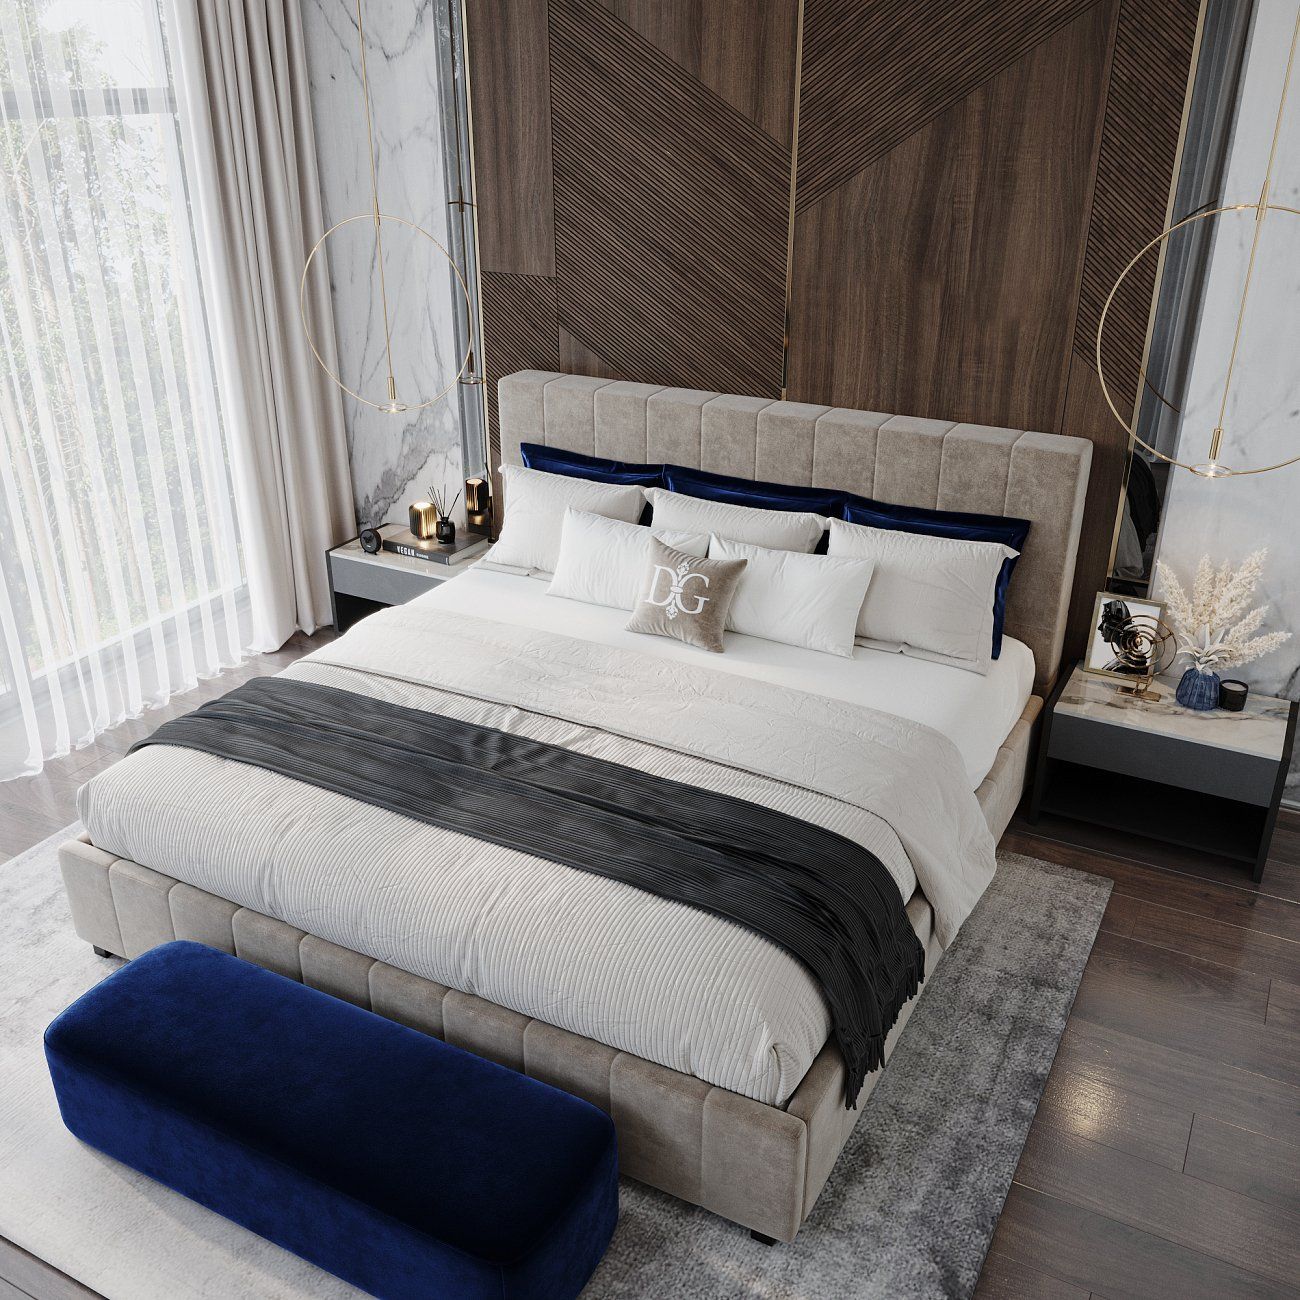 Кровать двуспальная 160х200 см синяя Shining Modern